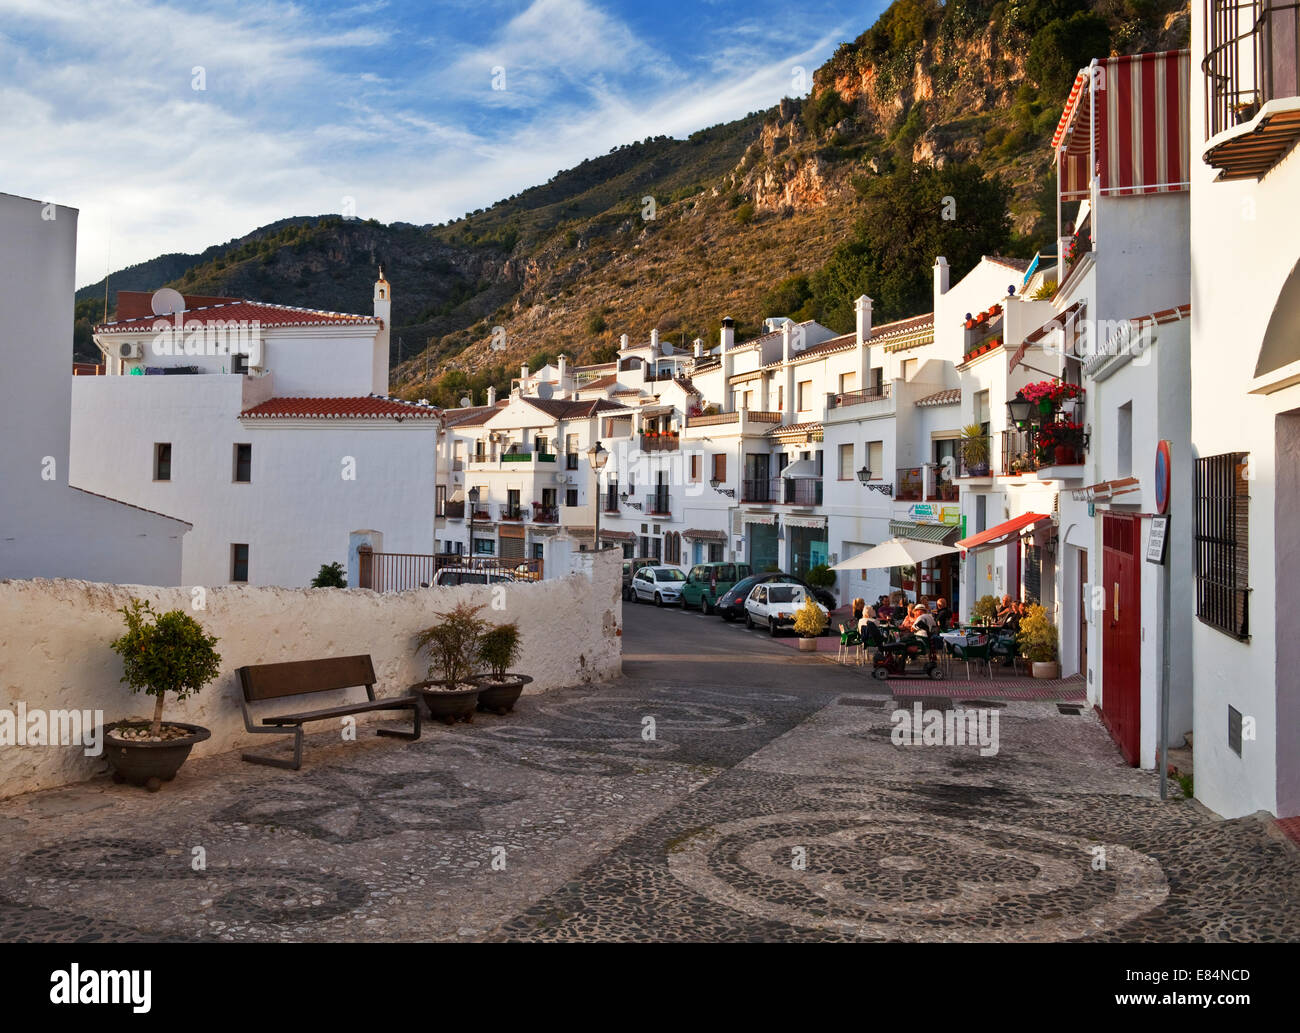 Calle Real Street, Friginiana Village, Costa del Sol, provincia di Malaga, Andalucoa, Spagna Foto Stock